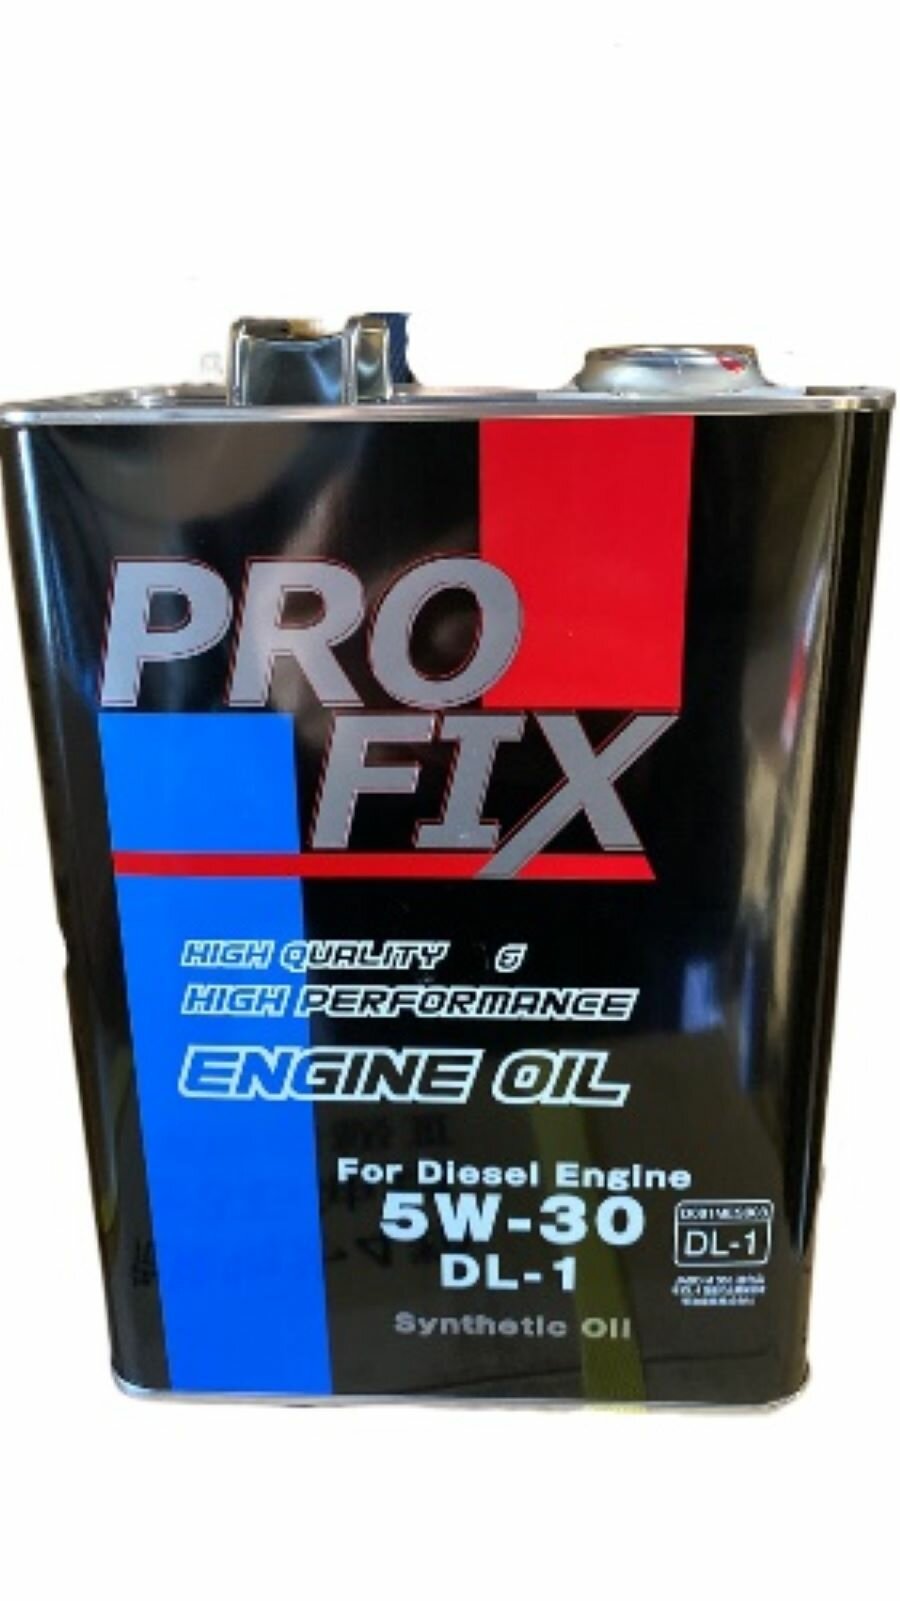 Синтетическое моторное масло Profix DL-1 5W-30, 4 л, 3.8 кг